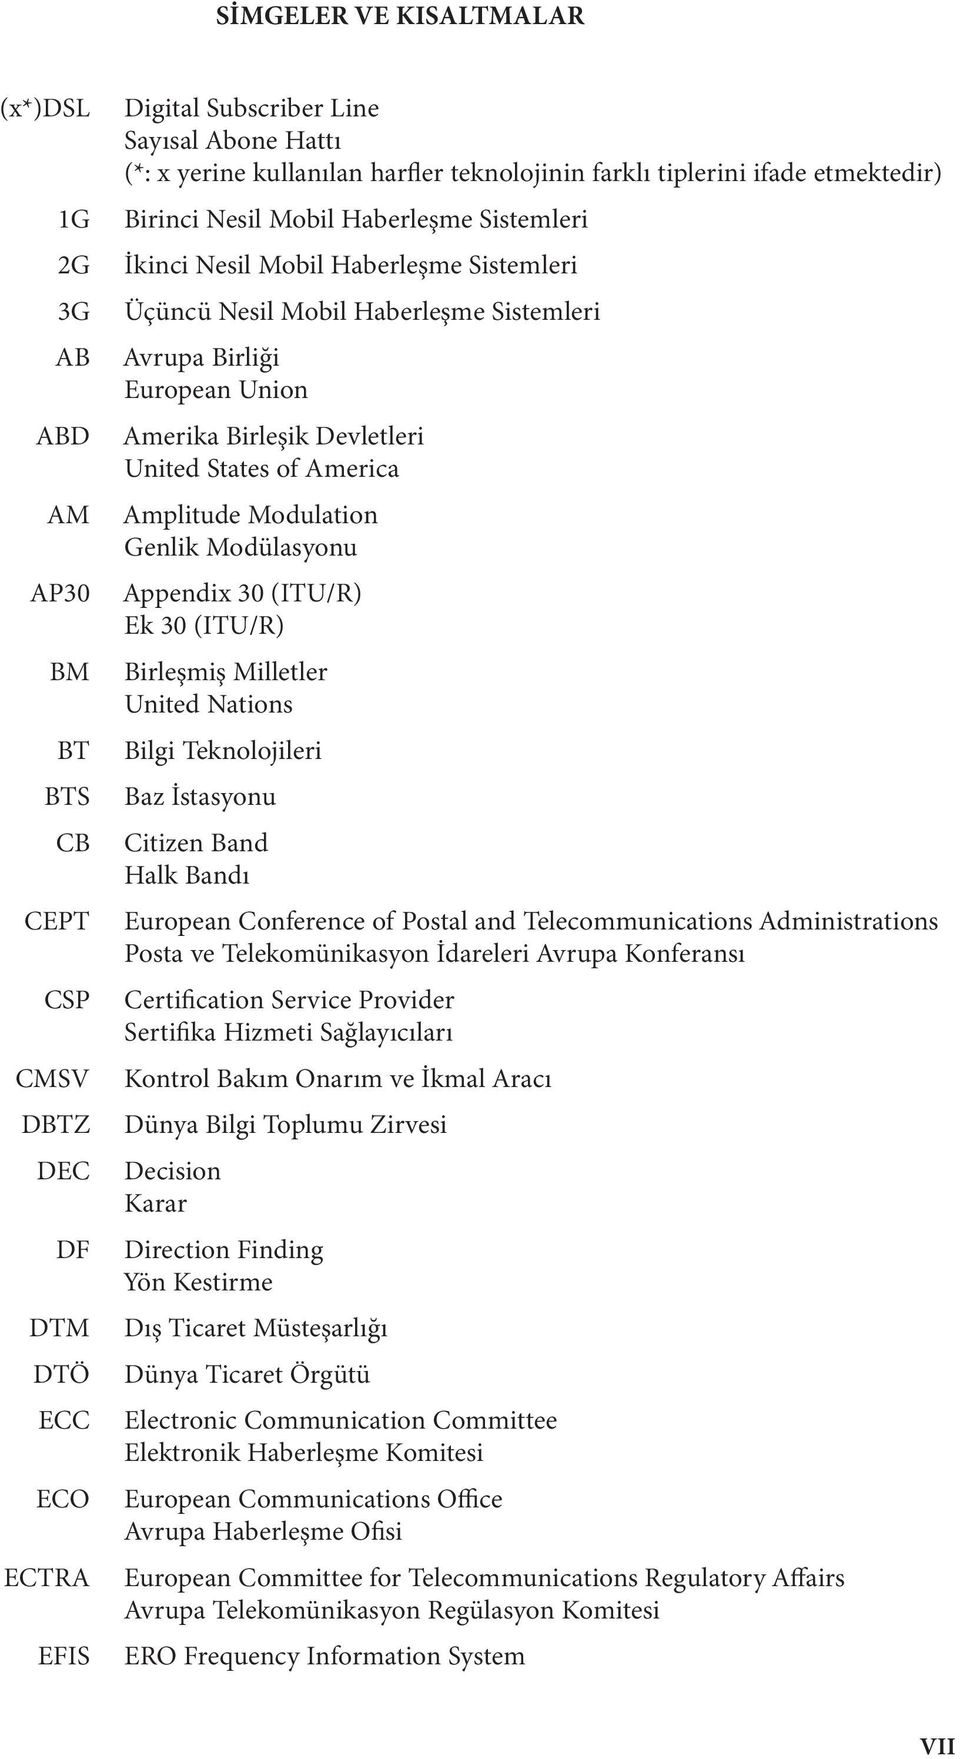 Union Amerika Birleşik Devletleri United States of America Amplitude Modulation Genlik Modülasyonu Appendix 30 (ITU/R) Ek 30 (ITU/R) Birleşmiş Milletler United Nations Bilgi Teknolojileri Baz